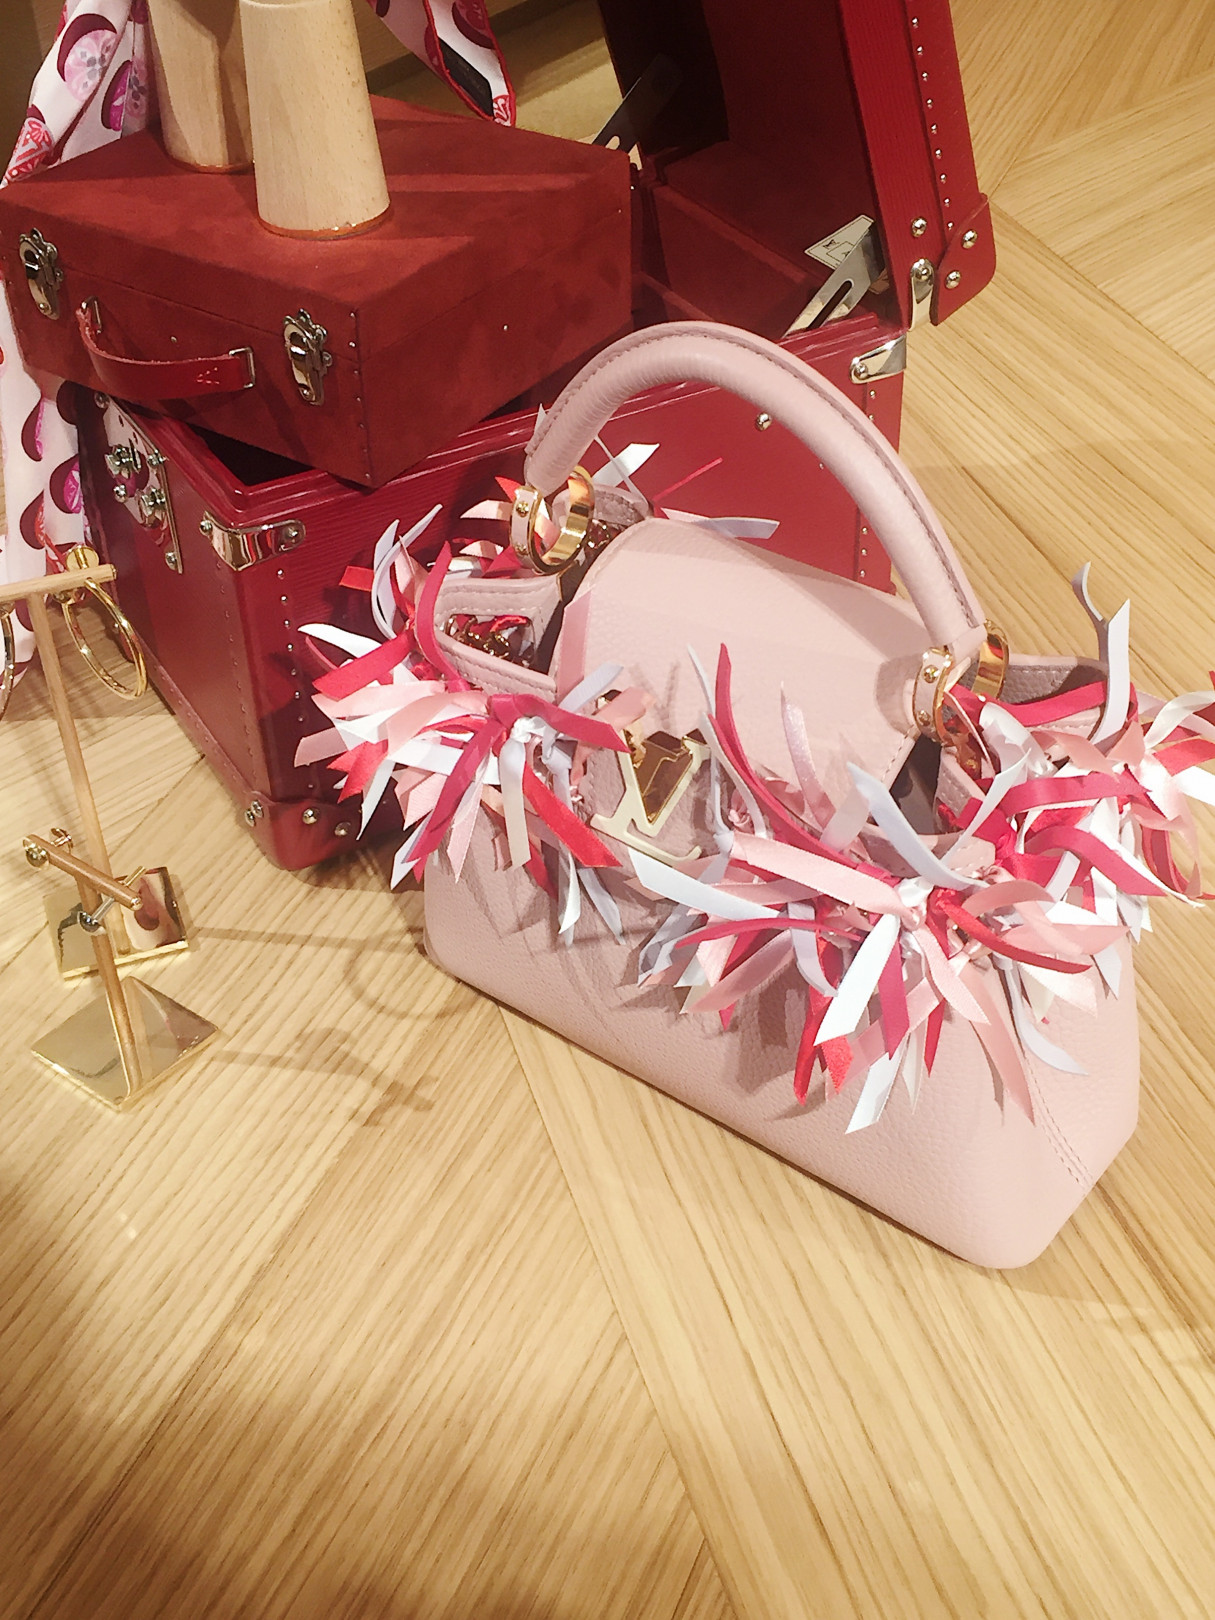 日本のおみくじから着想を得た「カプシーヌ」シリーズの限定バッグ